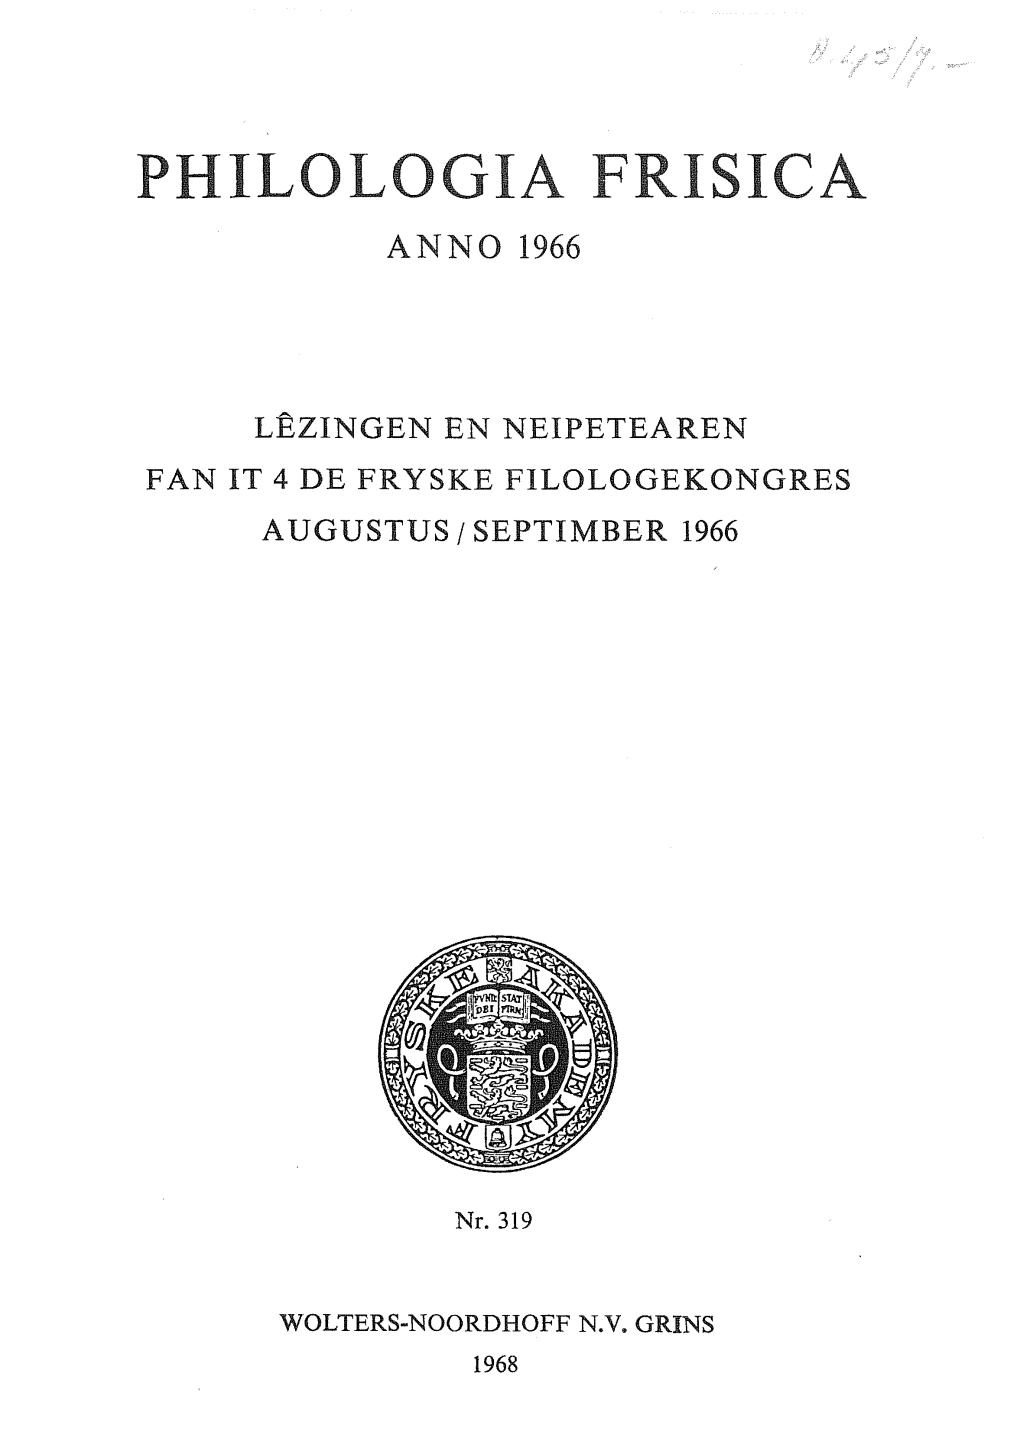 Philologia Frisica Anno 1966